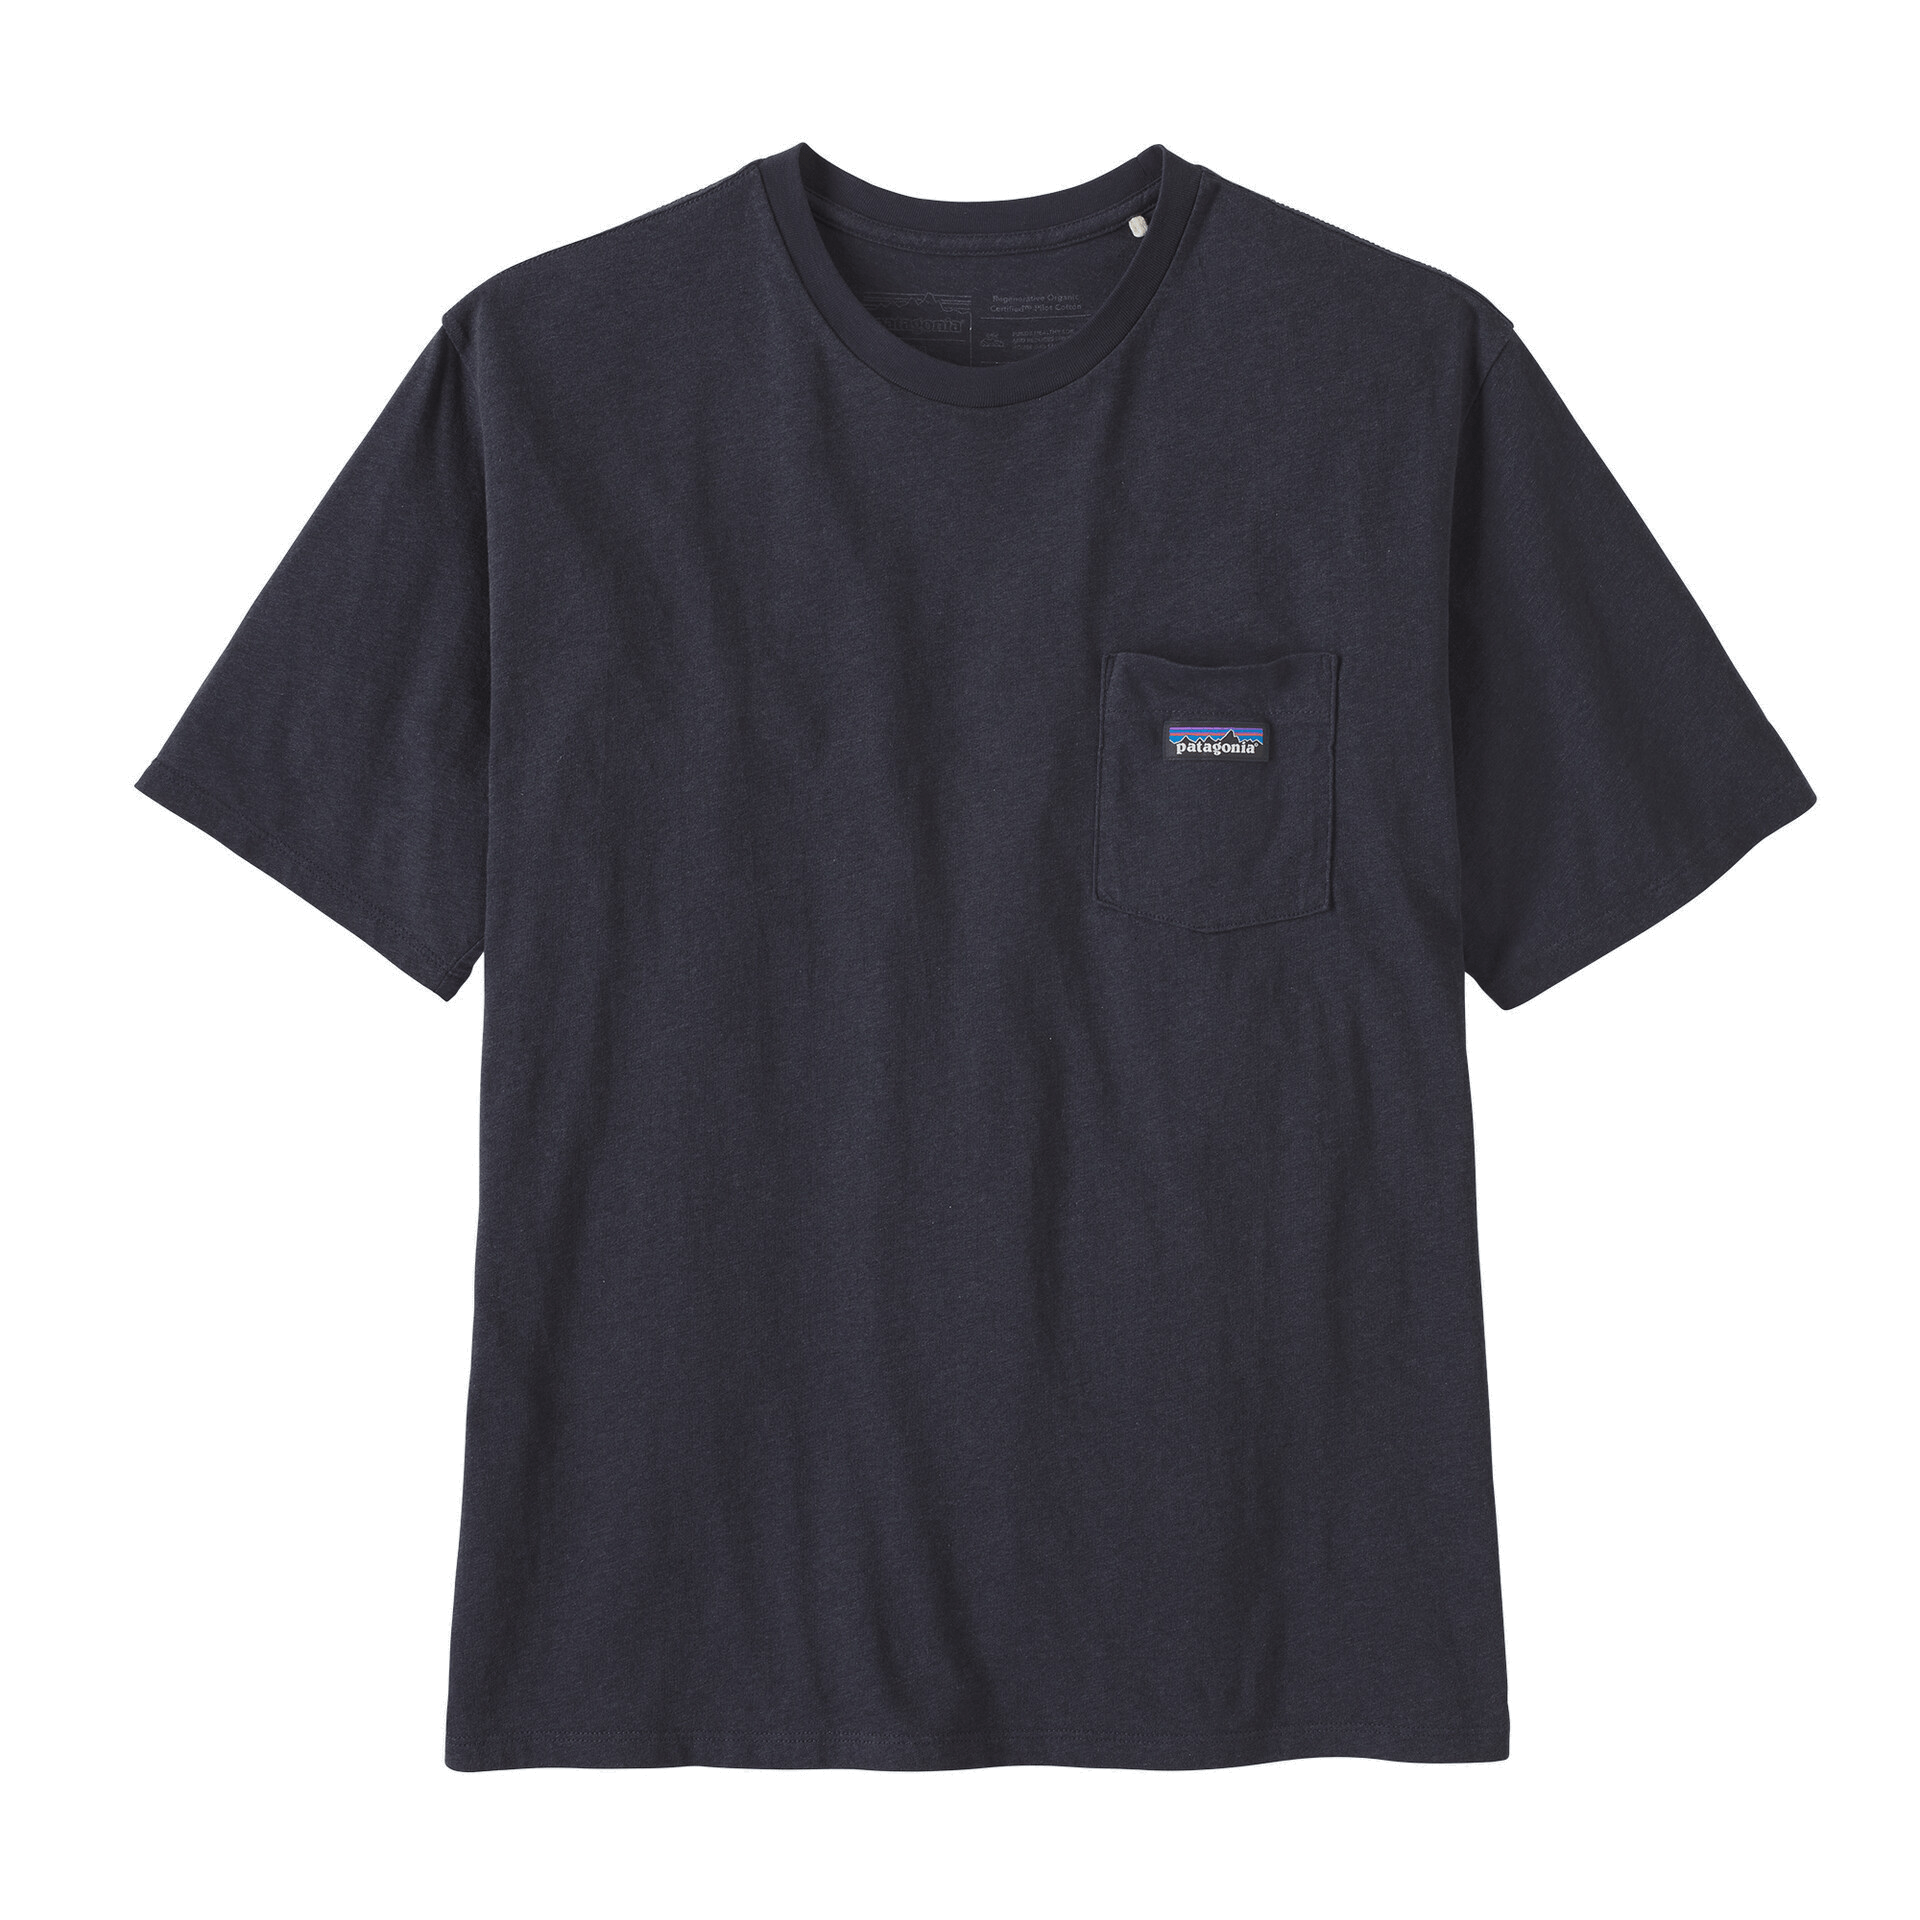 Patagonia T-shirts XS / Ink Black Patagonia - Men's Daily Pocket Tee